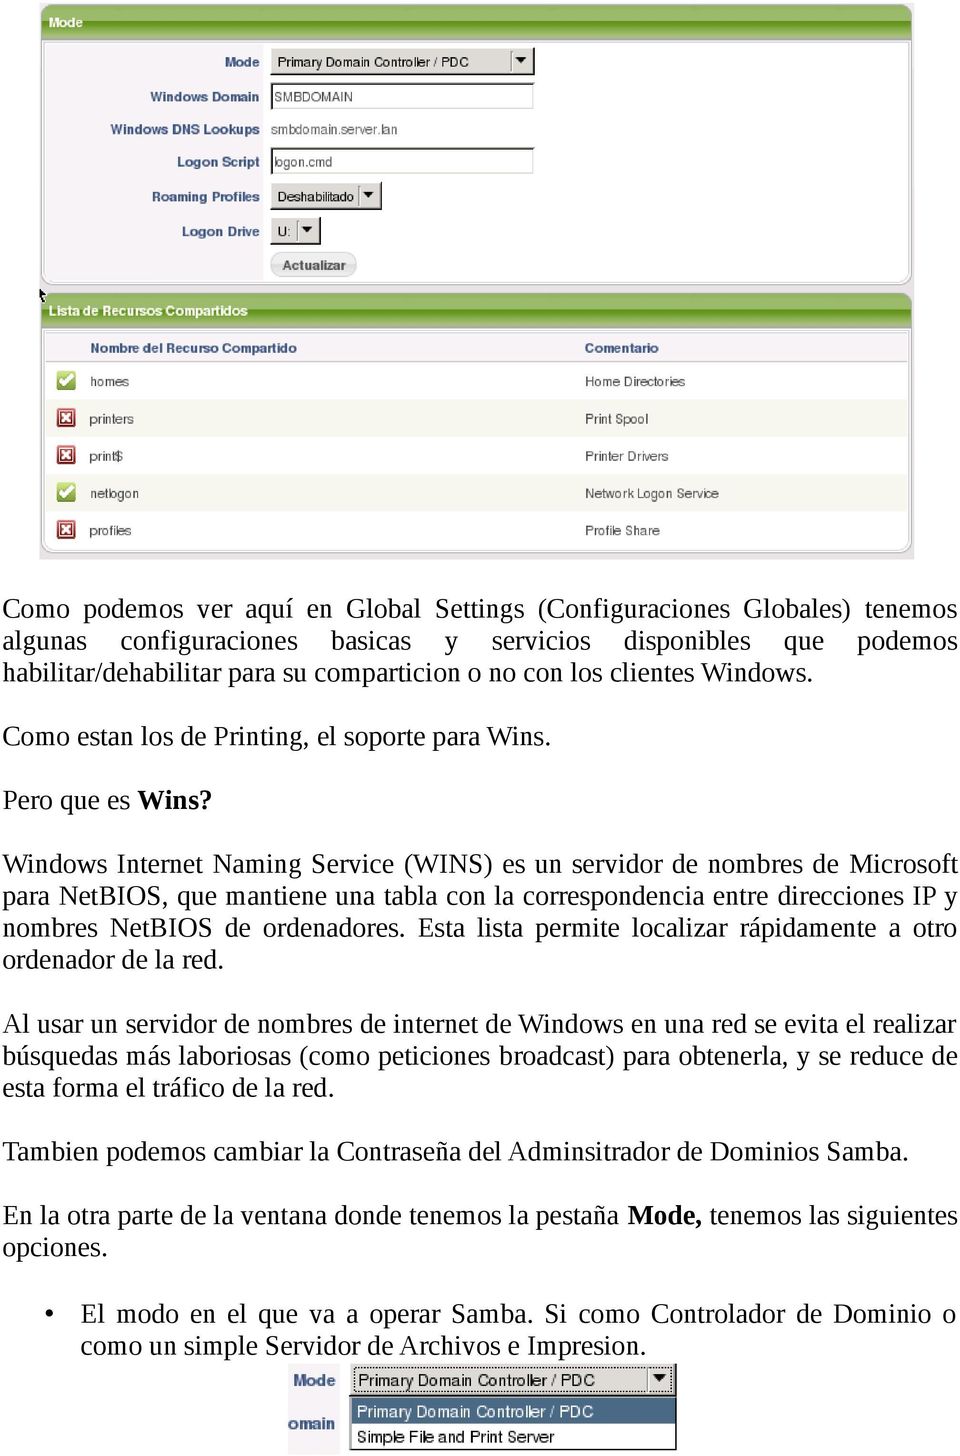 Windows Internet Naming Service (WINS) es un servidor de nombres de Microsoft para NetBIOS, que mantiene una tabla con la correspondencia entre direcciones IP y nombres NetBIOS de ordenadores.